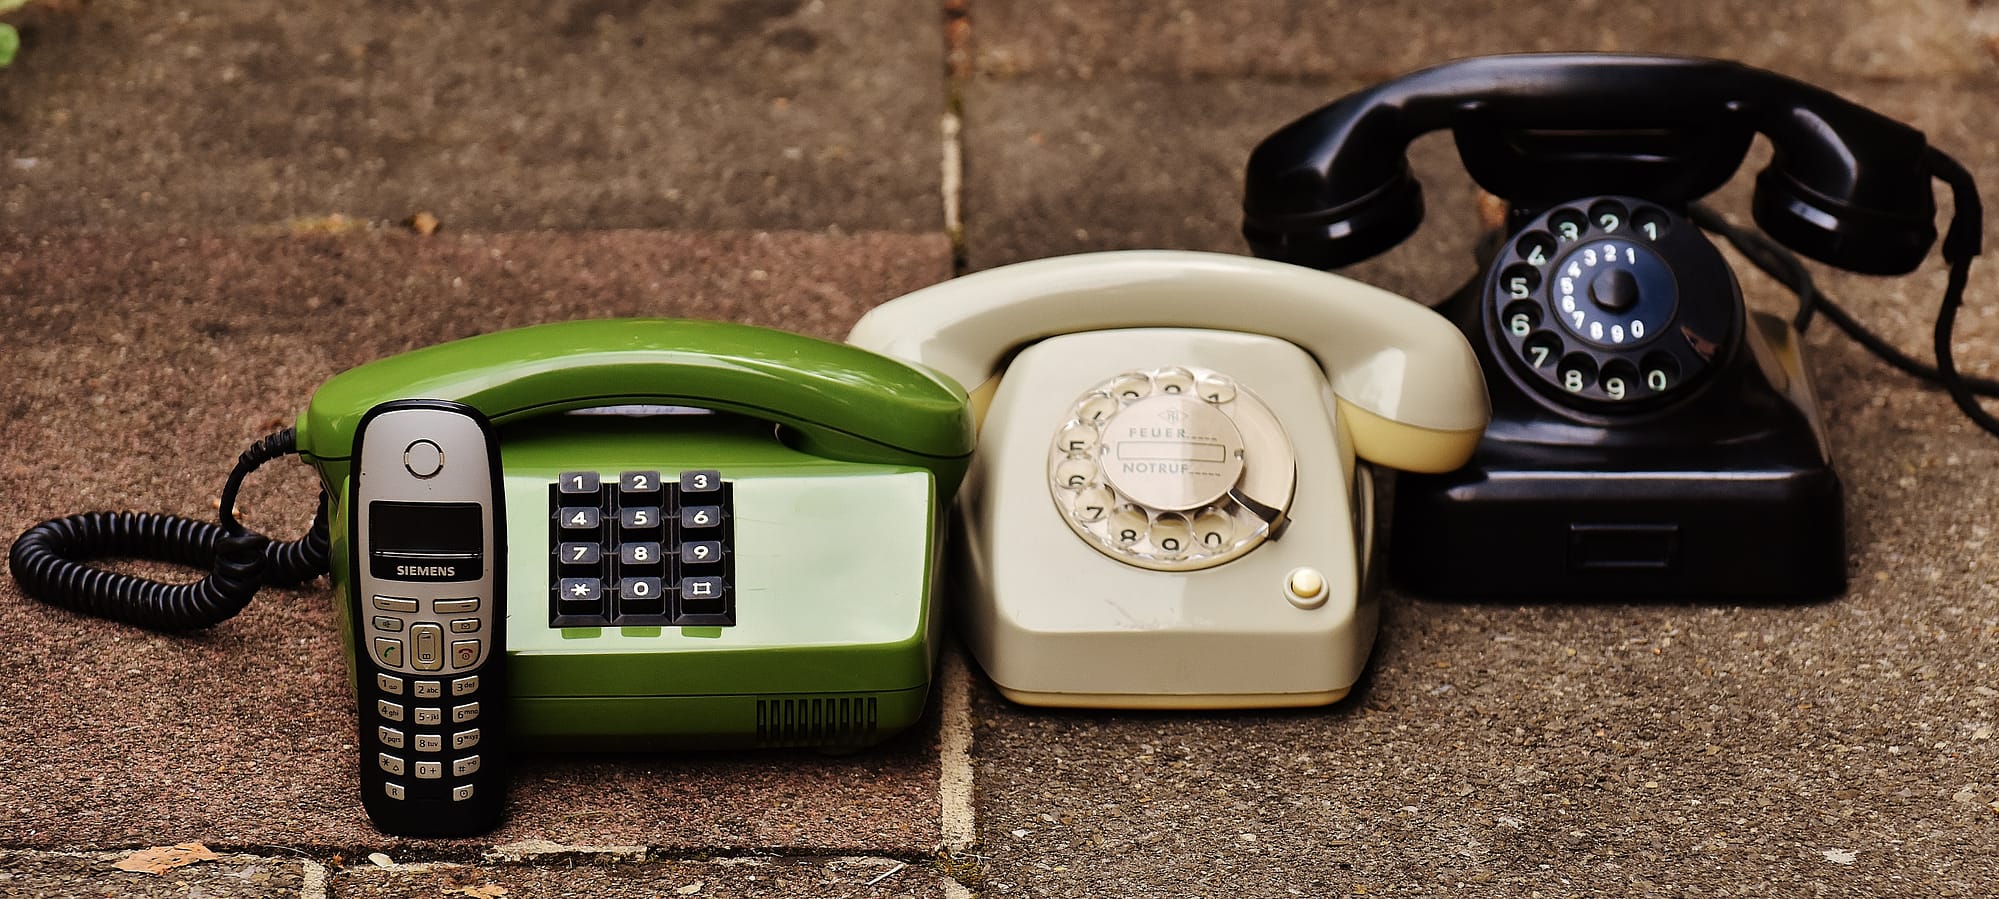 old school phones